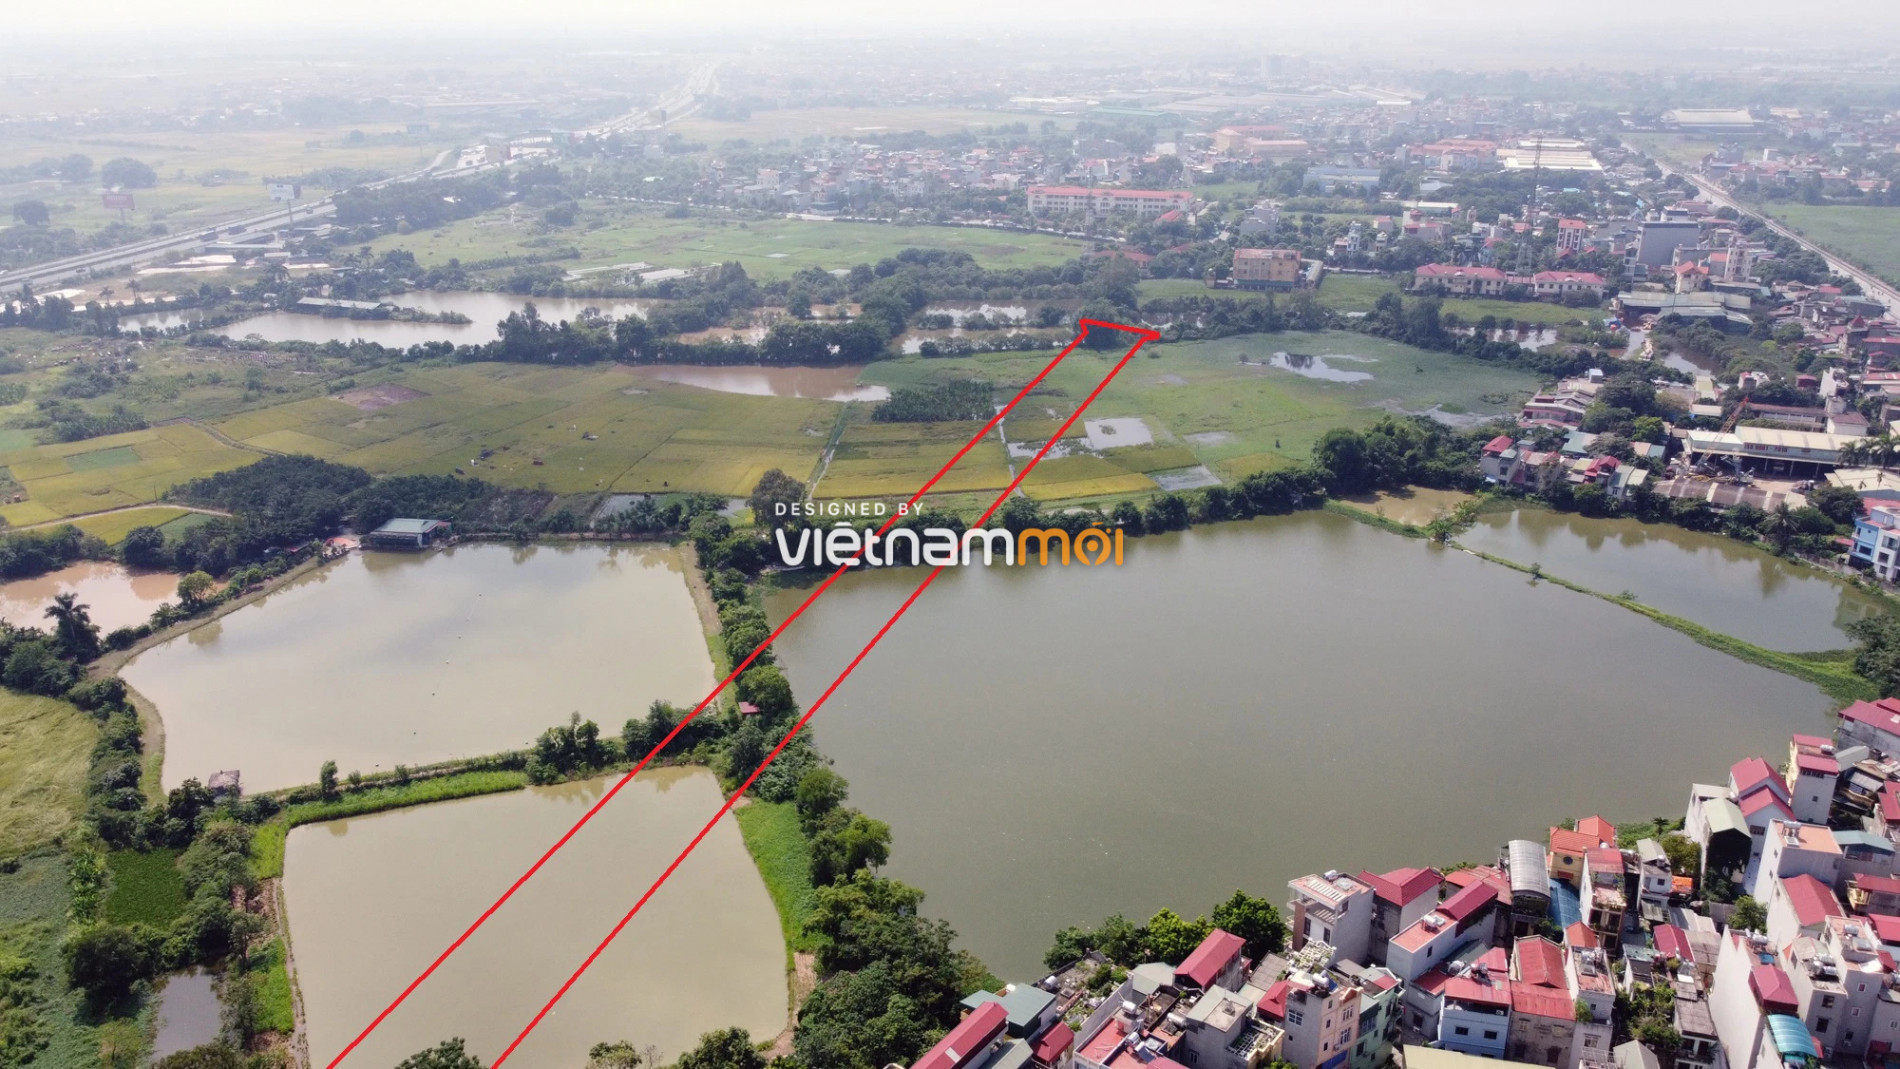  Những khu đất sắp thu hồi để mở đường ở xã Liên Ninh, Thanh Trì, Hà Nội (phần 6) - Ảnh 5.